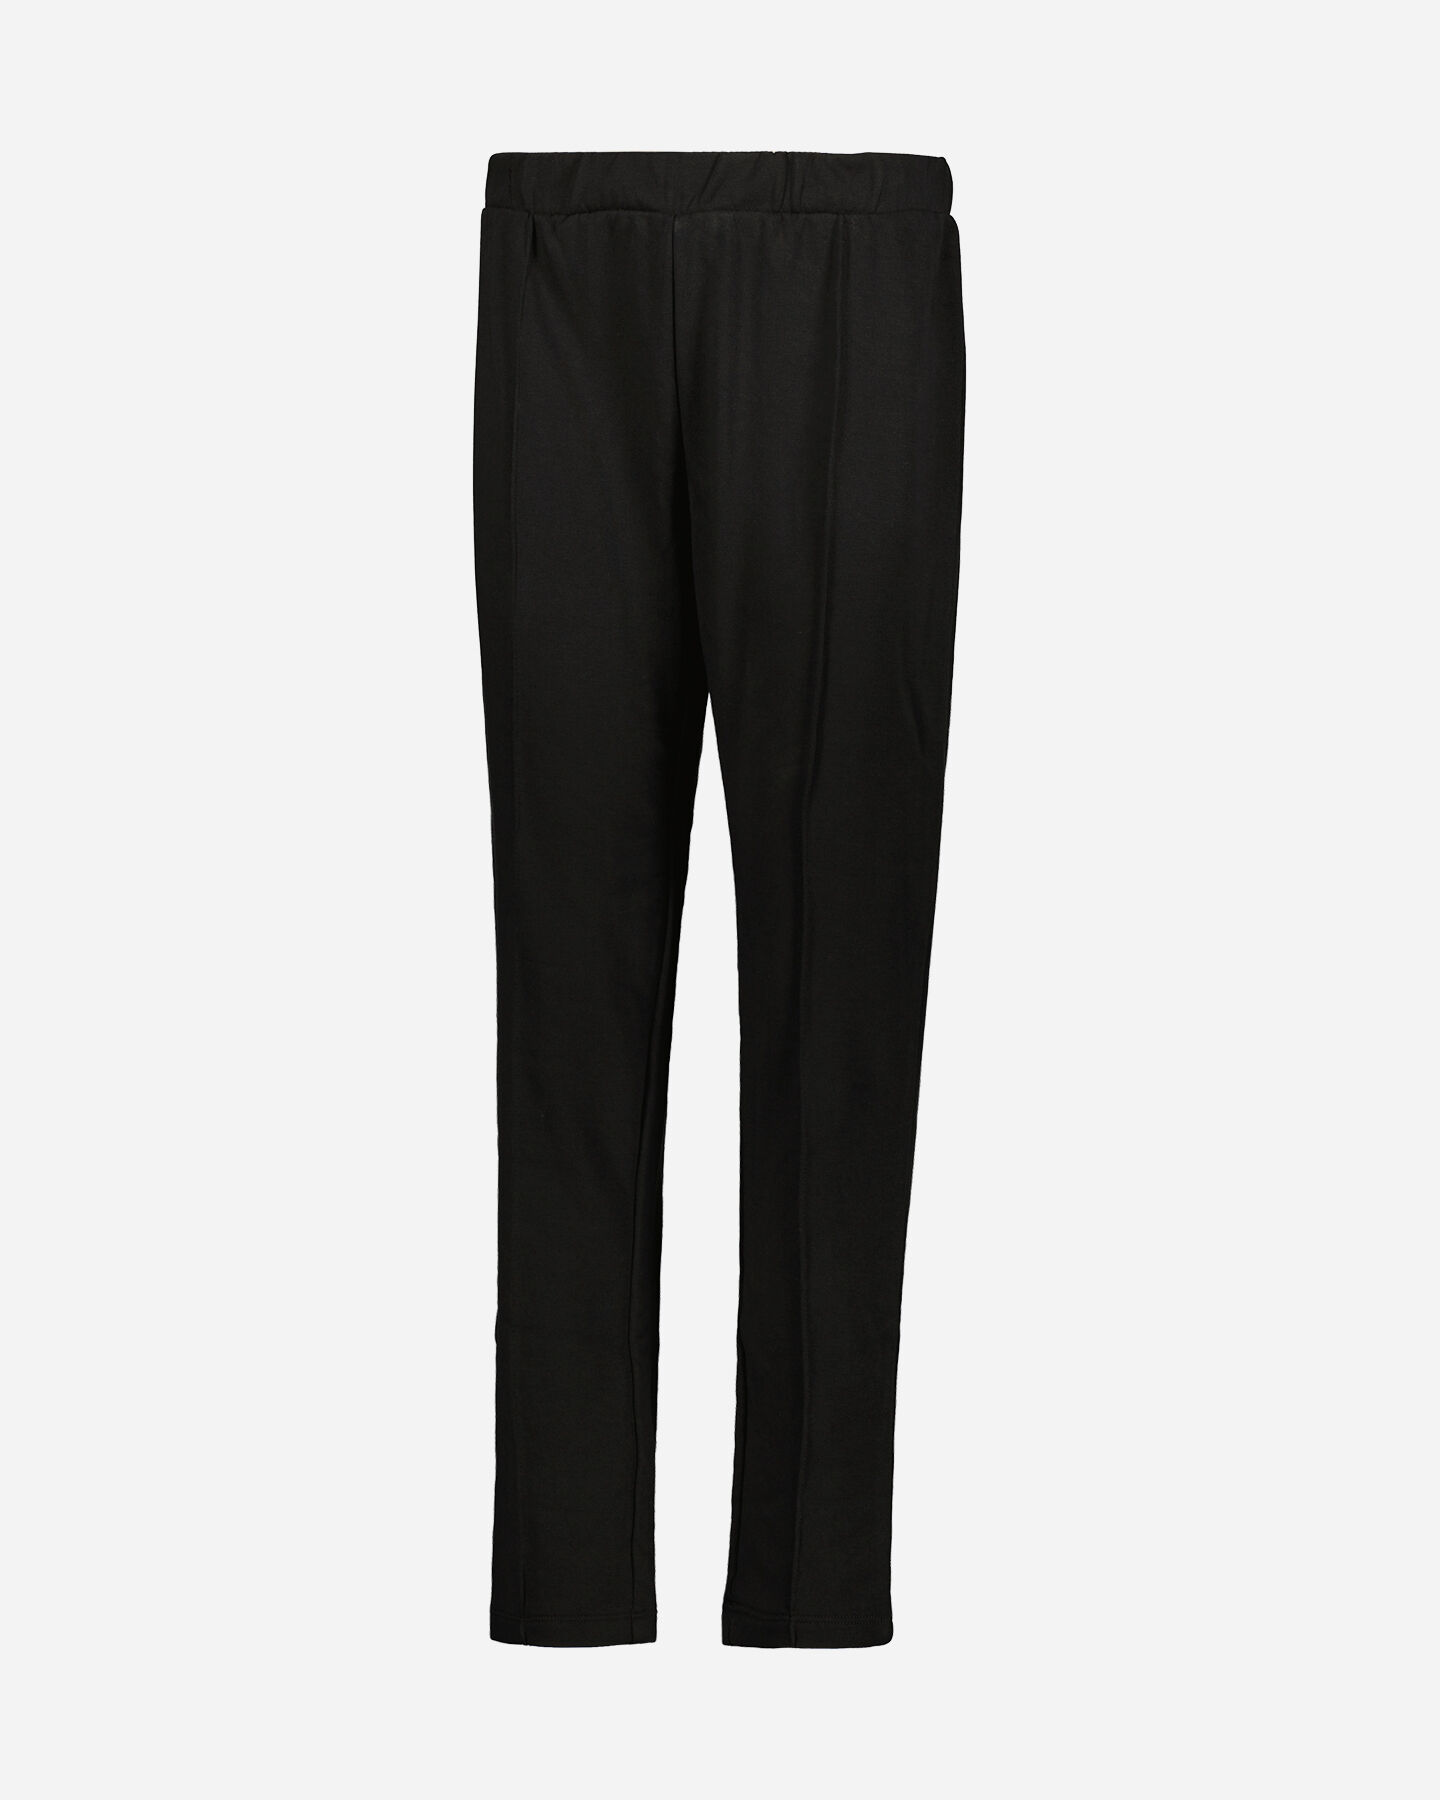  Pantalone ADMIRAL CLASSIC W S4111575|050|M scatto 0